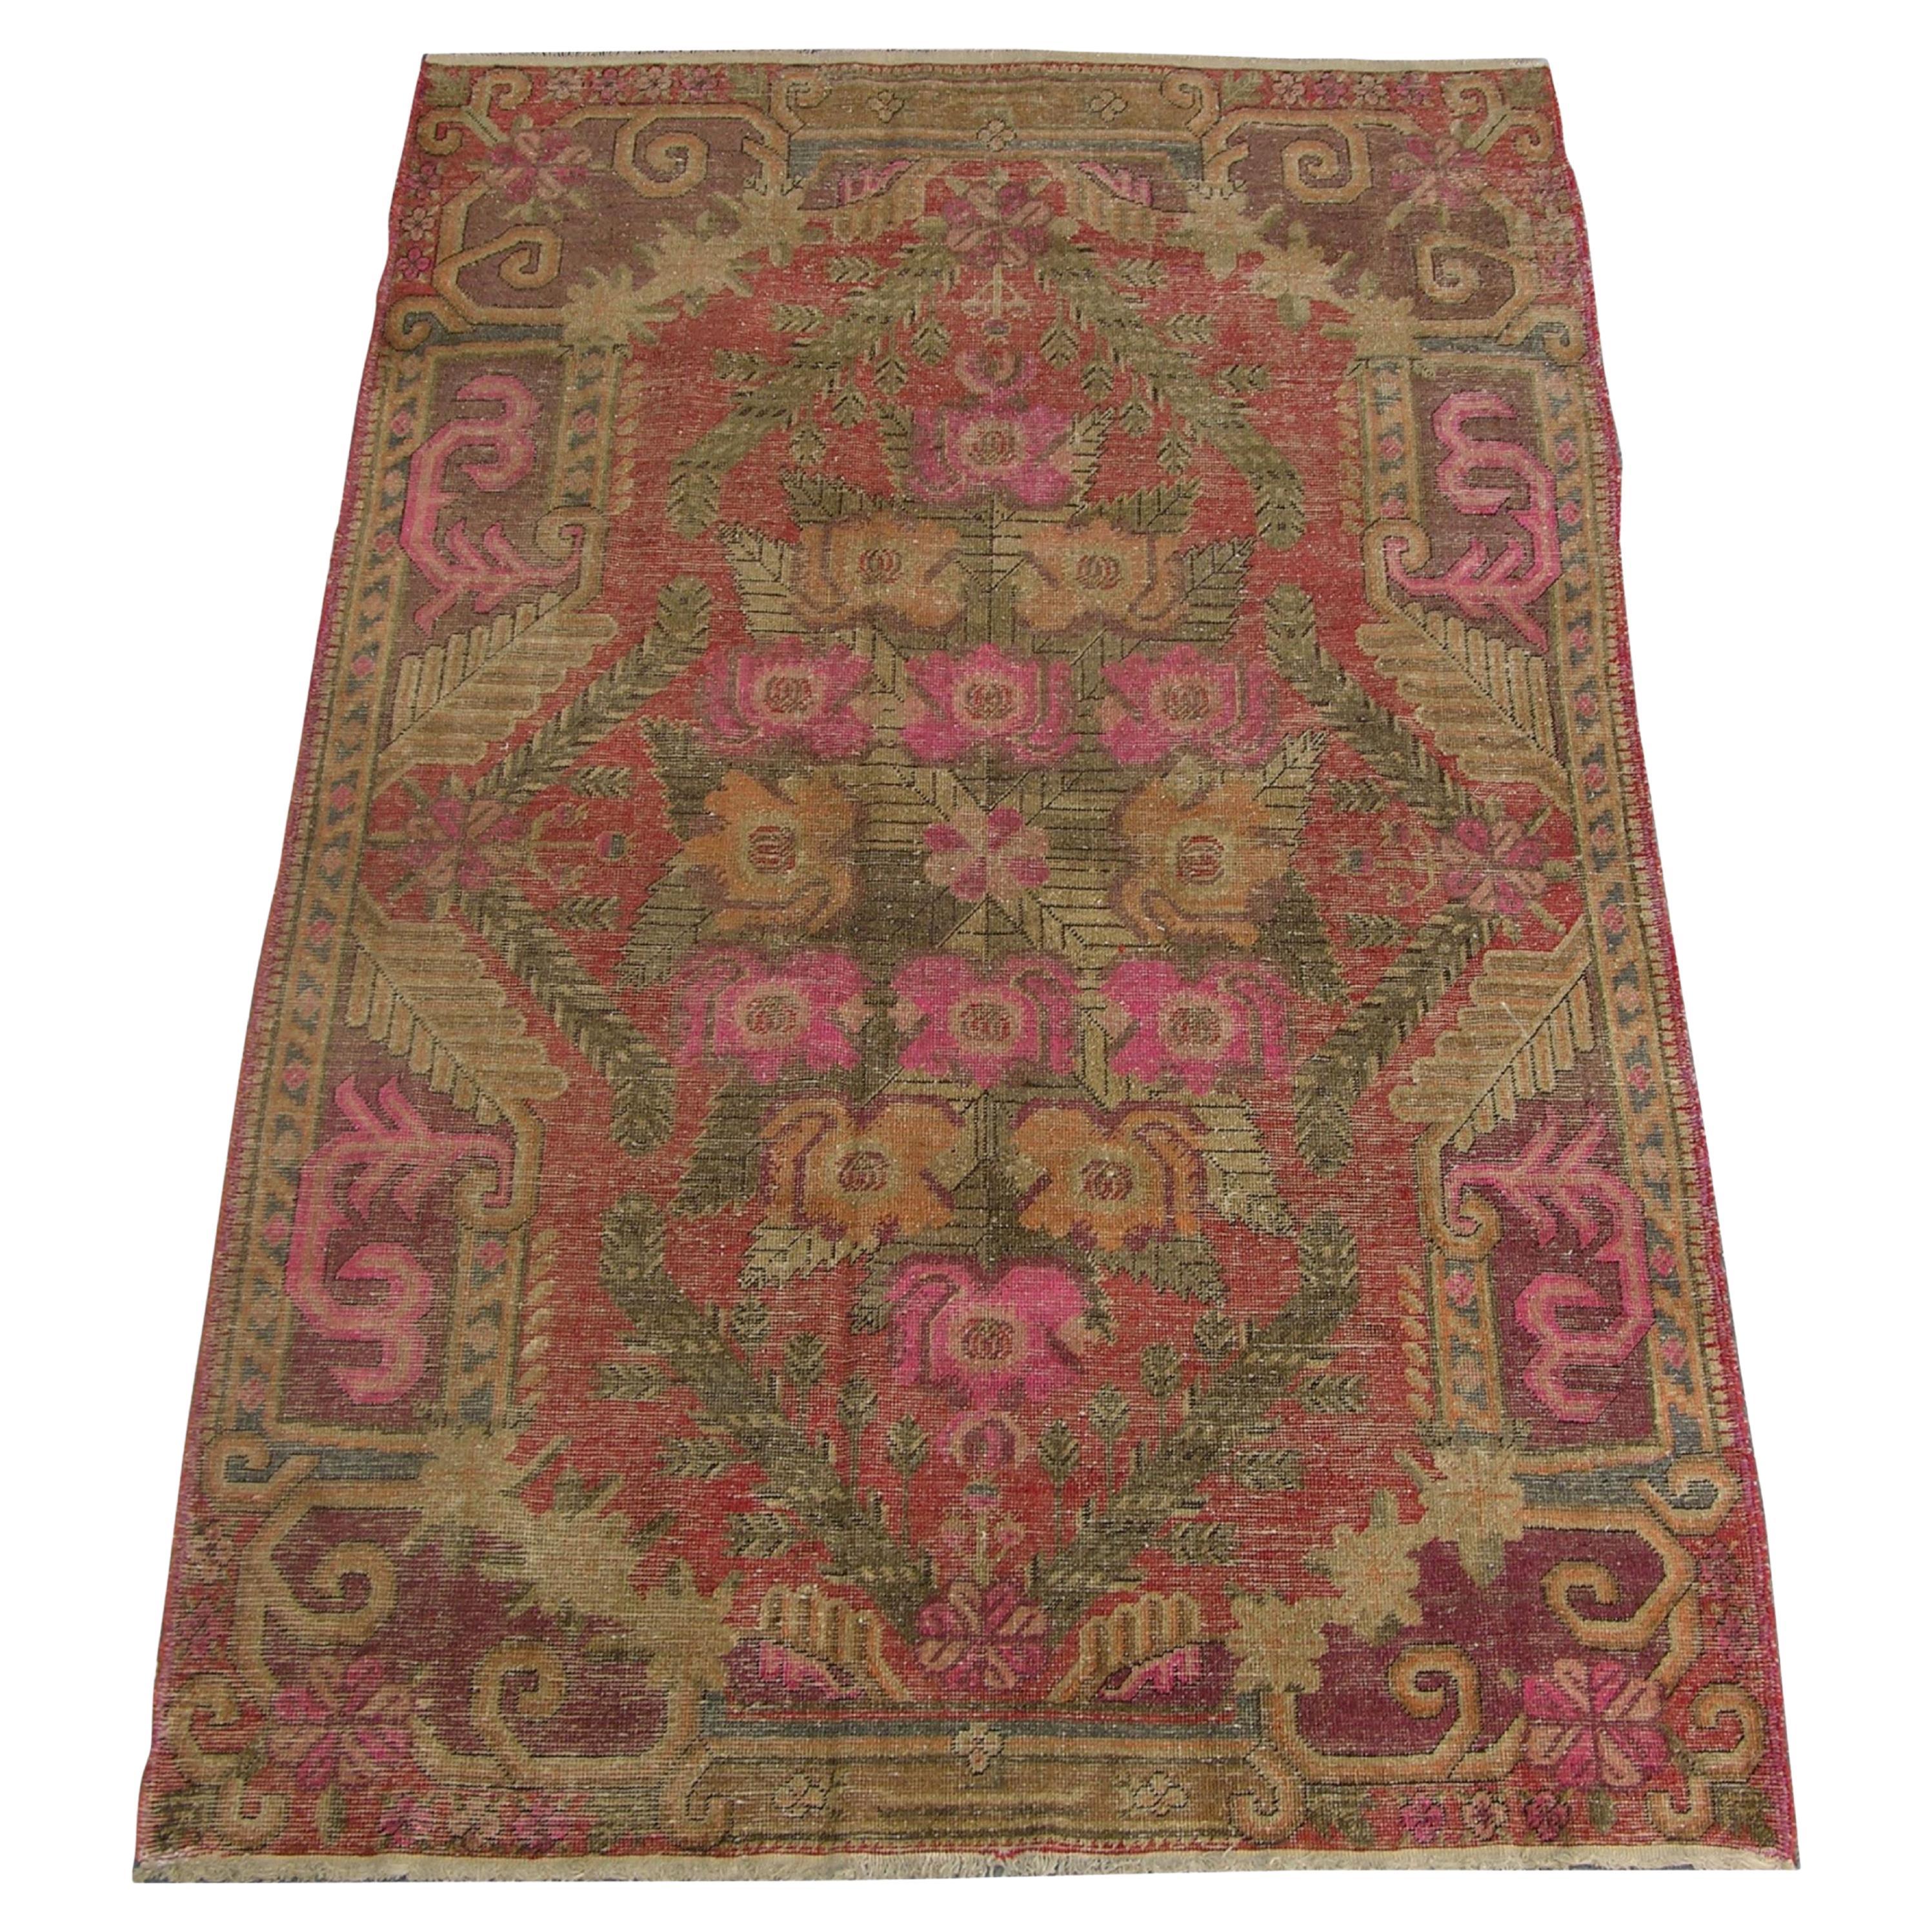 1900er Authentischer Khotan-Teppich mit Stammesmotiven